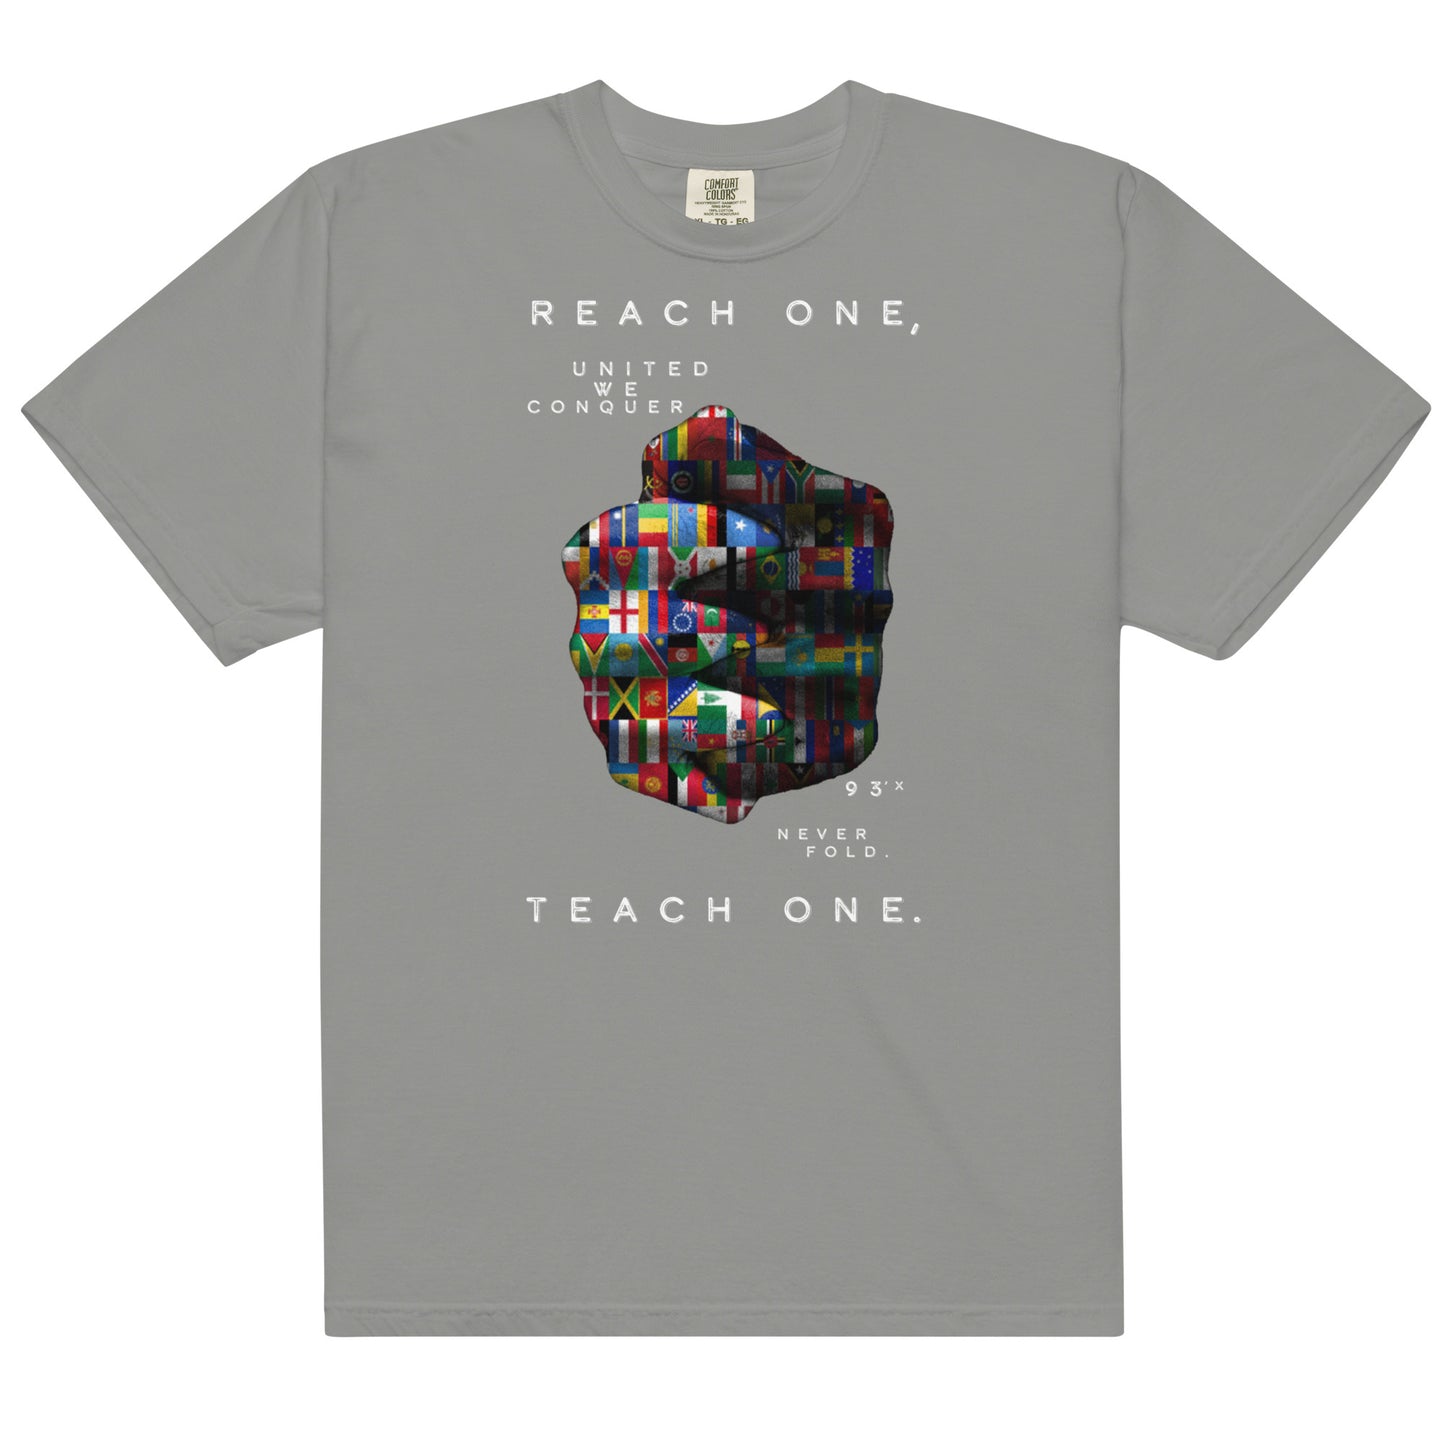 "REACH ONE, TEACH ONE" T-Shirts